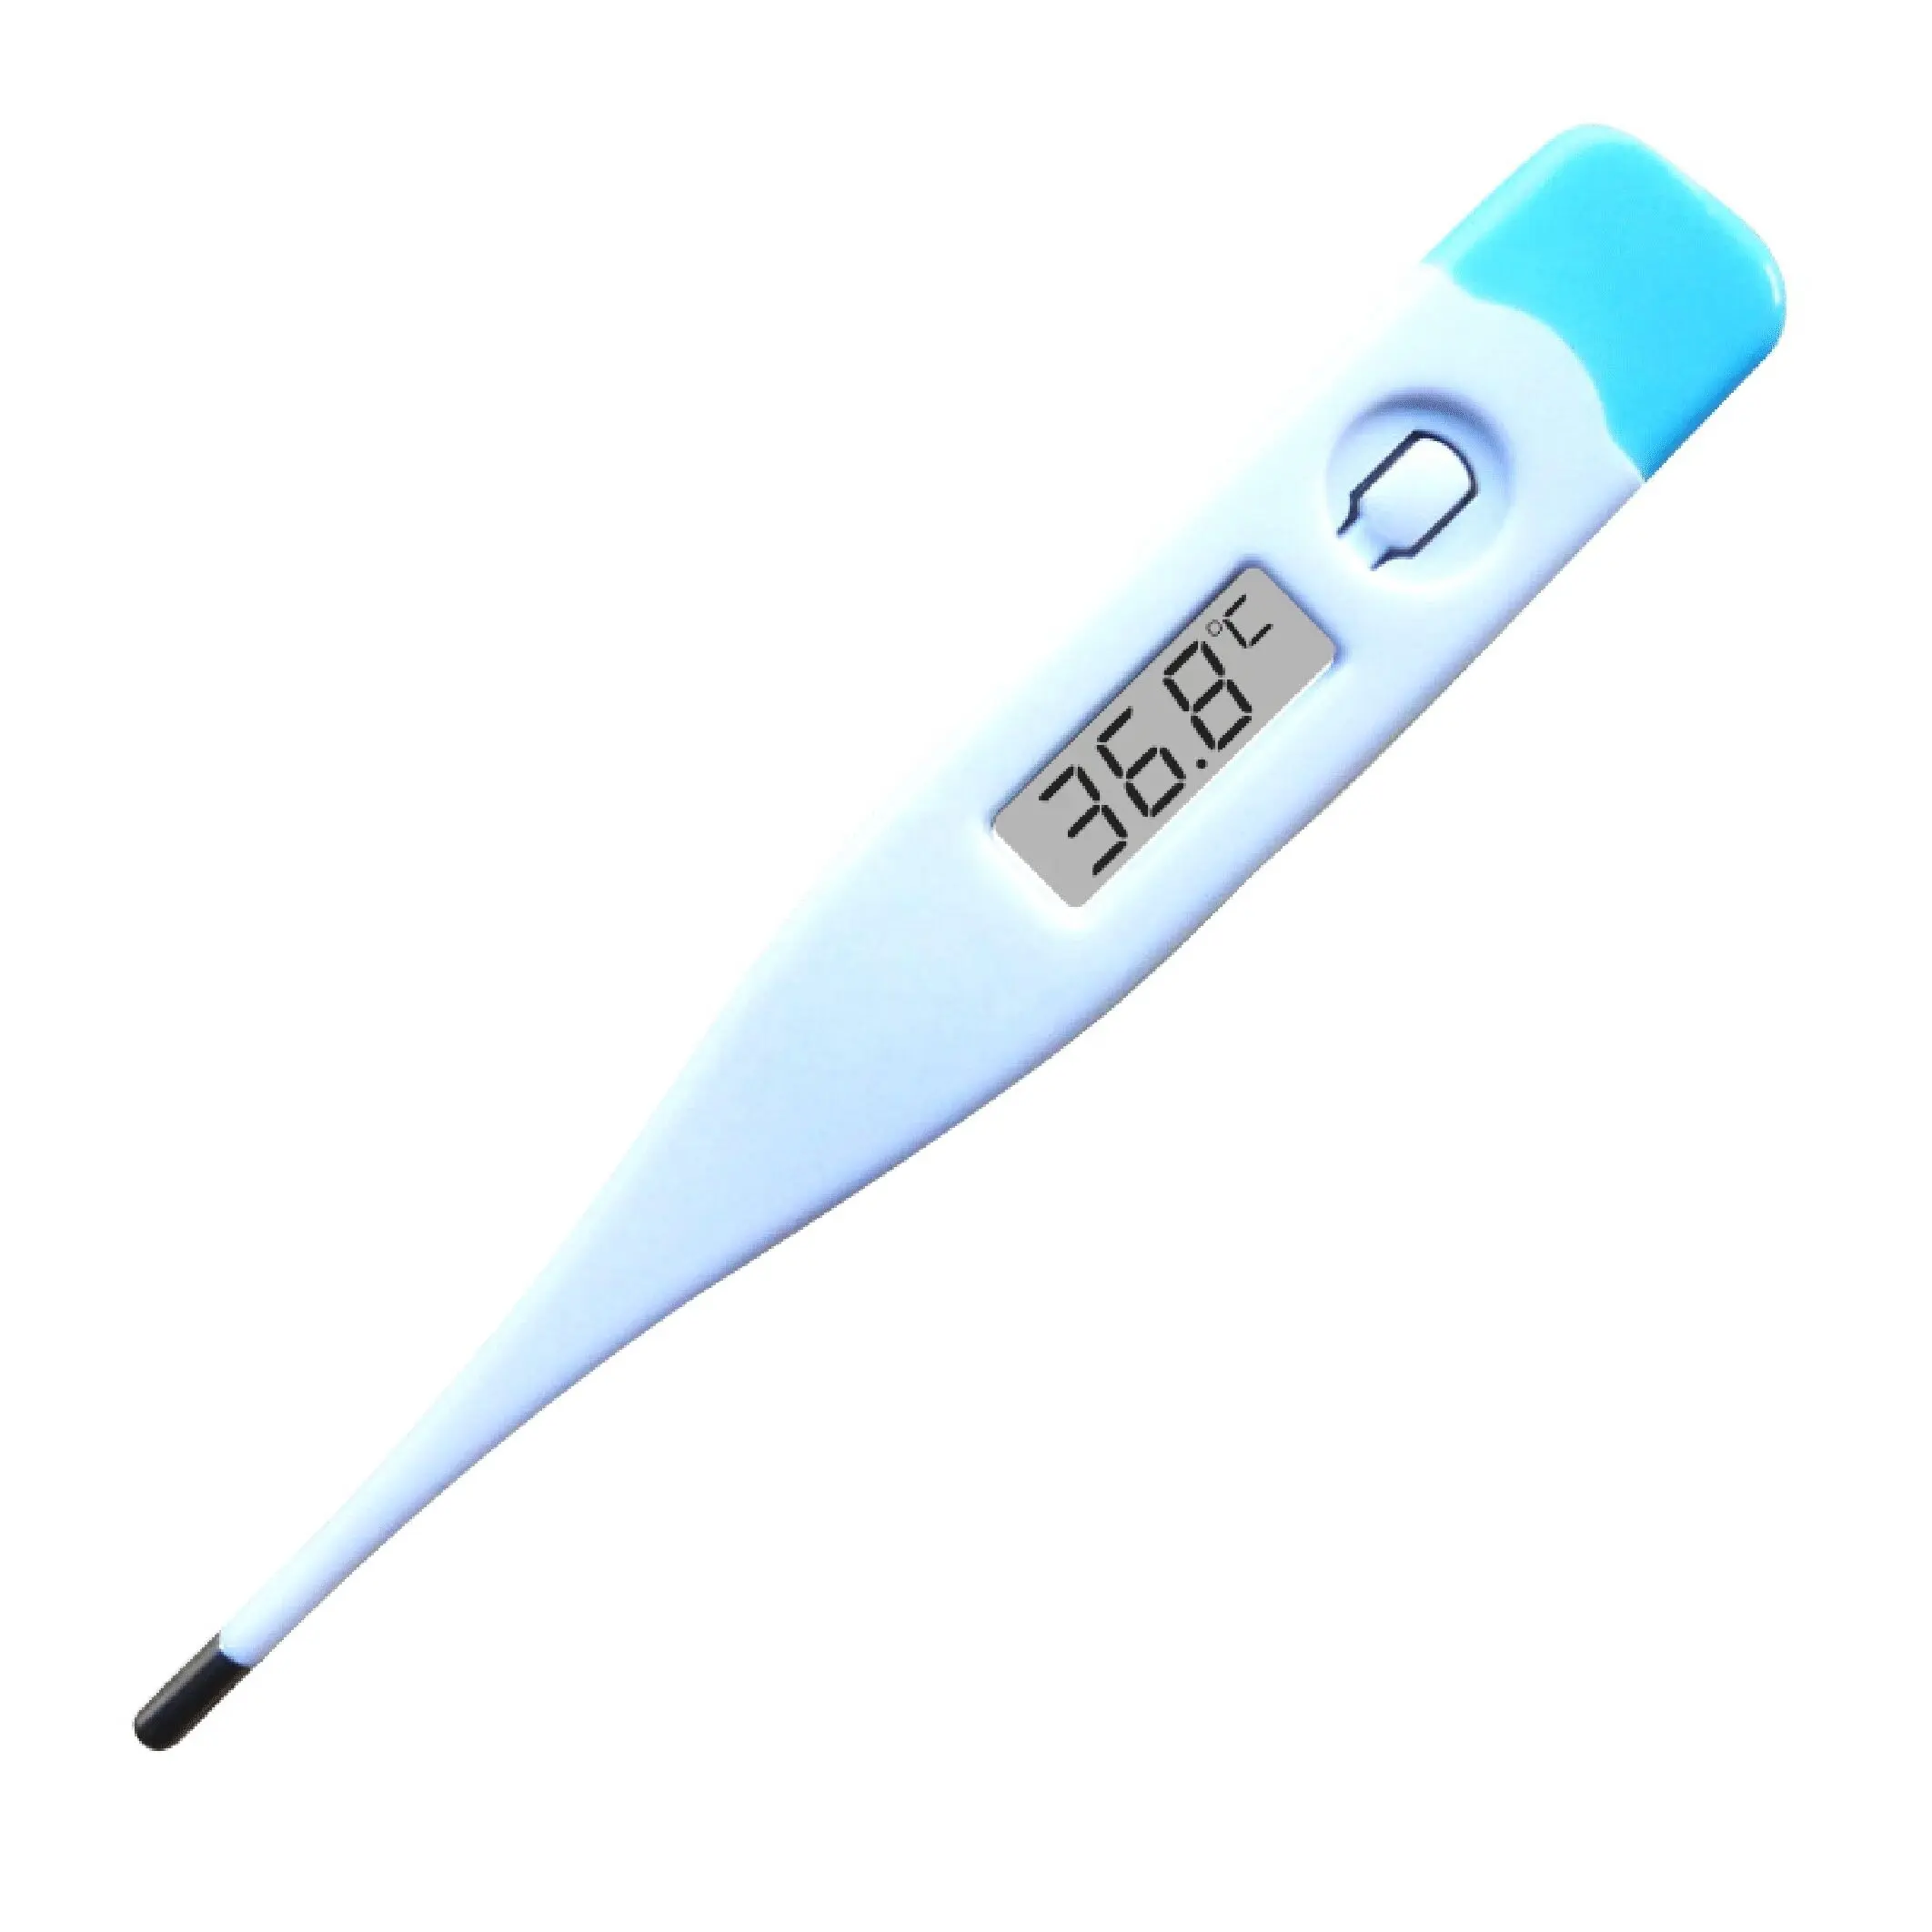 Özel yüksek hassasiyetli yeni çok fonksiyonlu termometre dijital termometre tıbbi için vücut